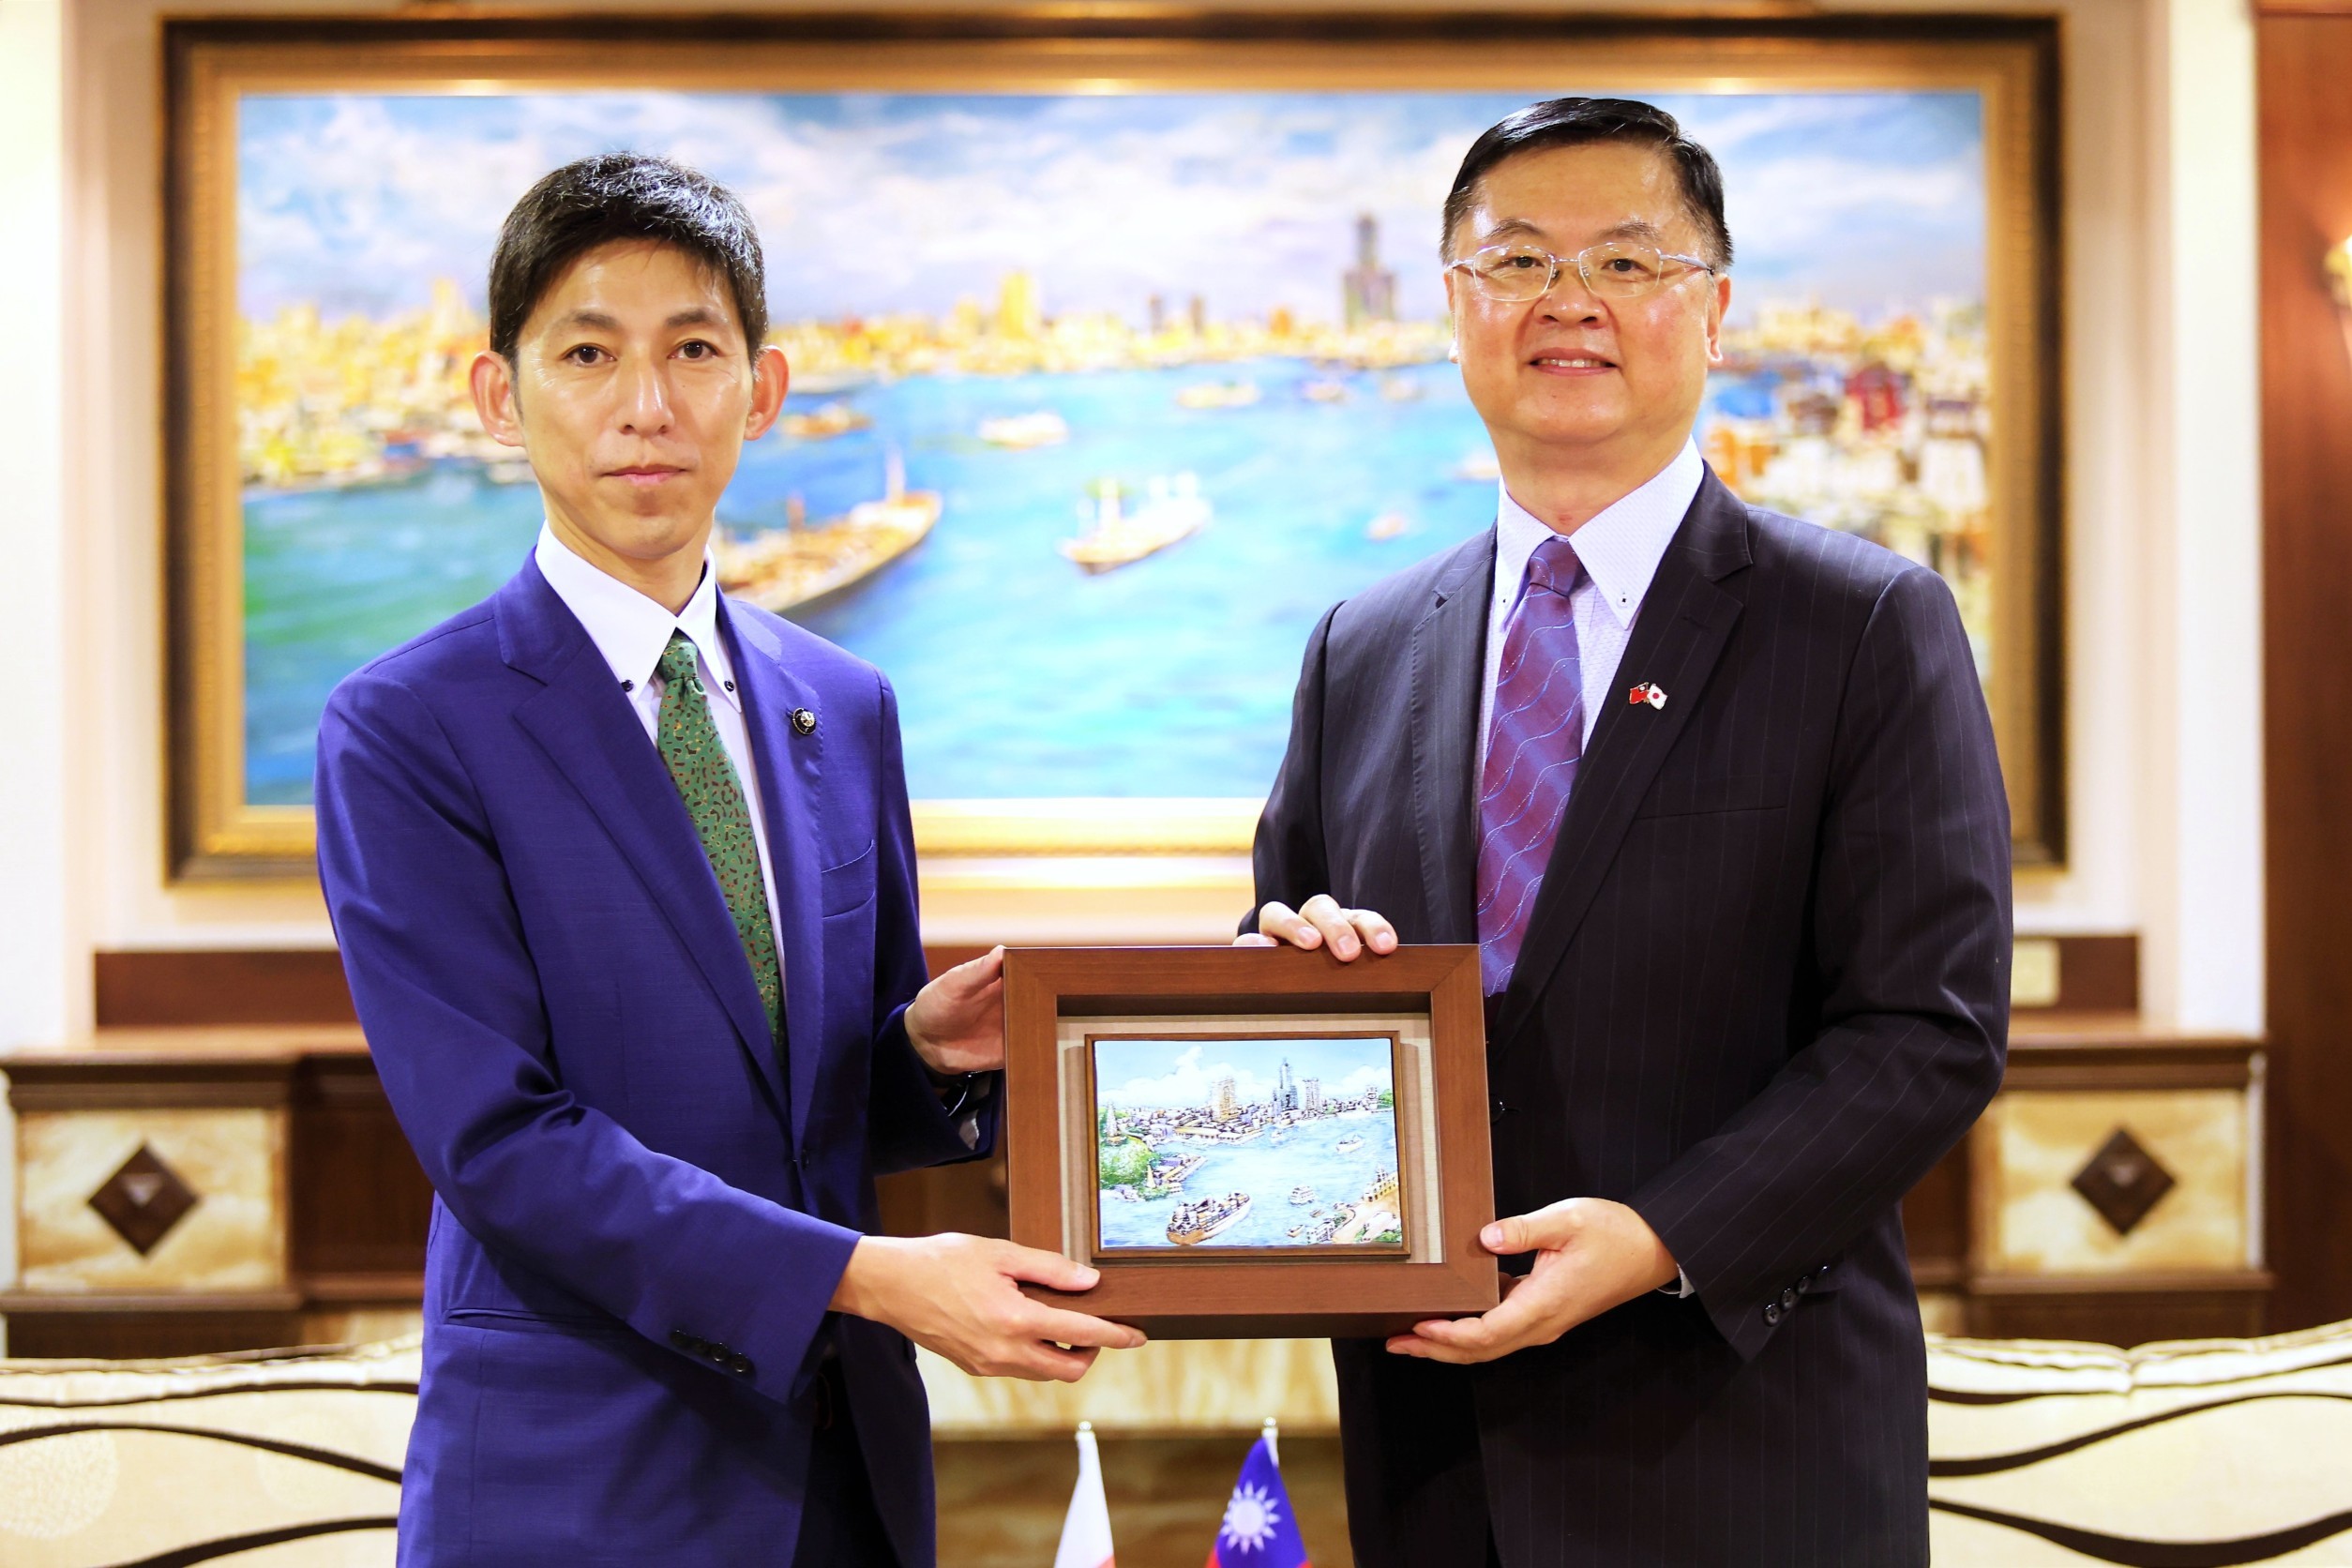 羅達生副市長代表致贈高雄港版畫予陸奧市長